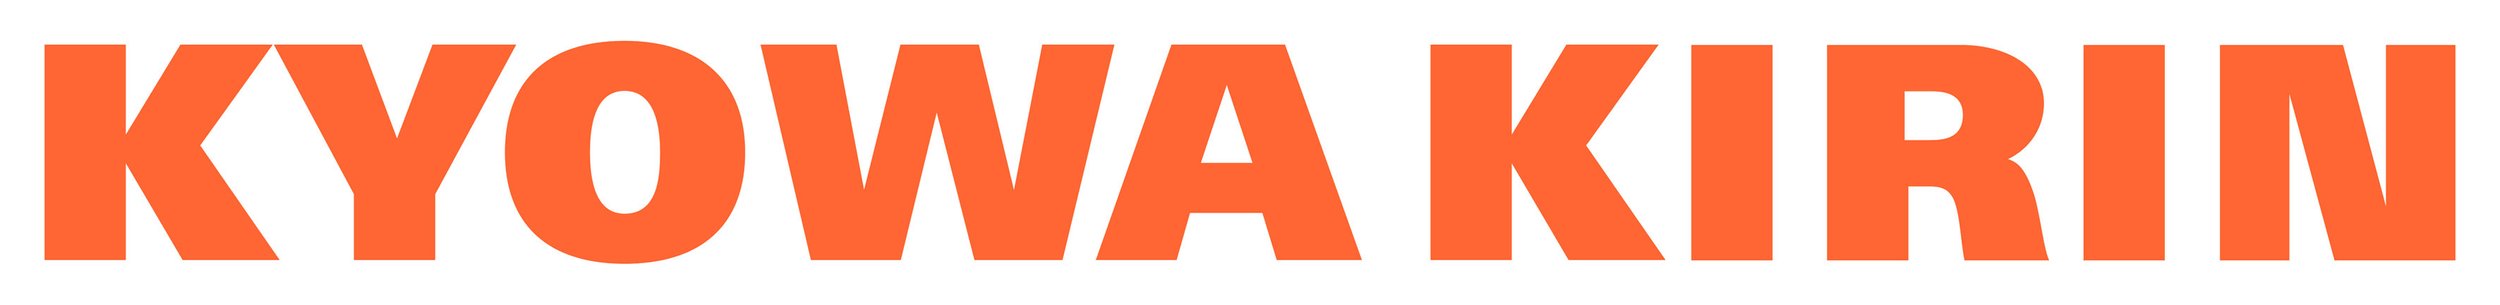 Kyowa_Kirin_Logo.jpg